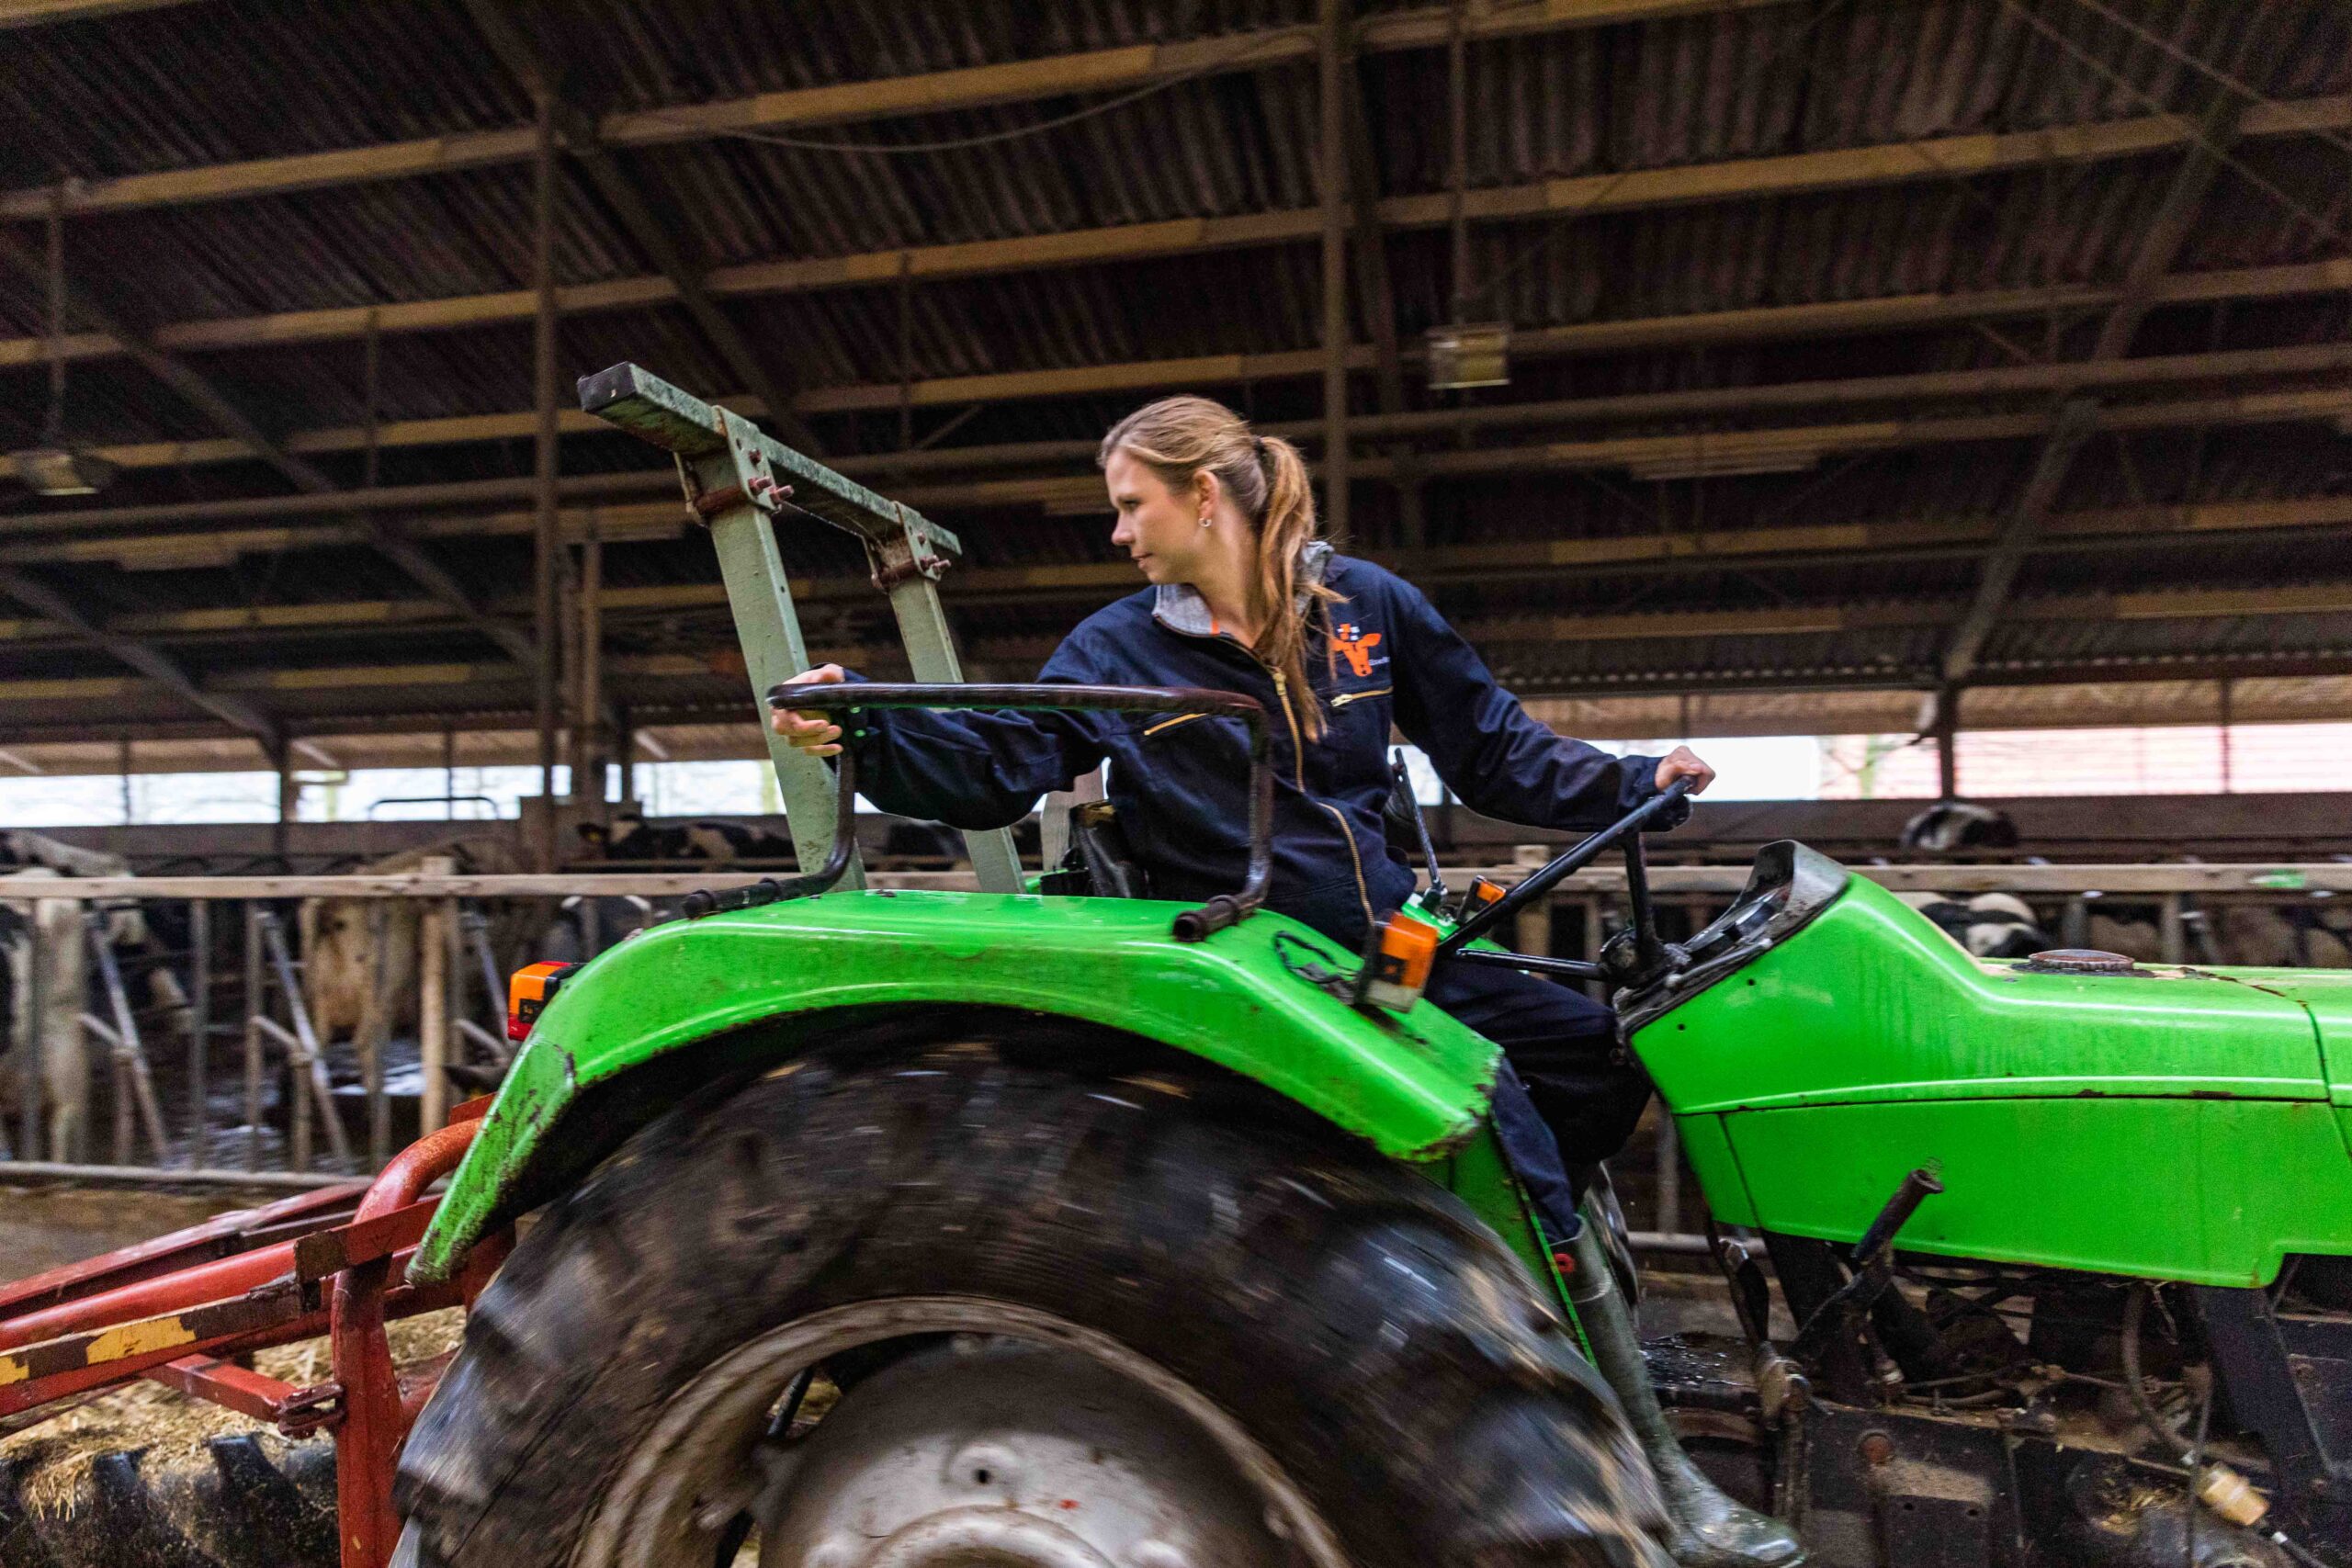 Els Uijterlinde on a tractor | indispensable agricultural women